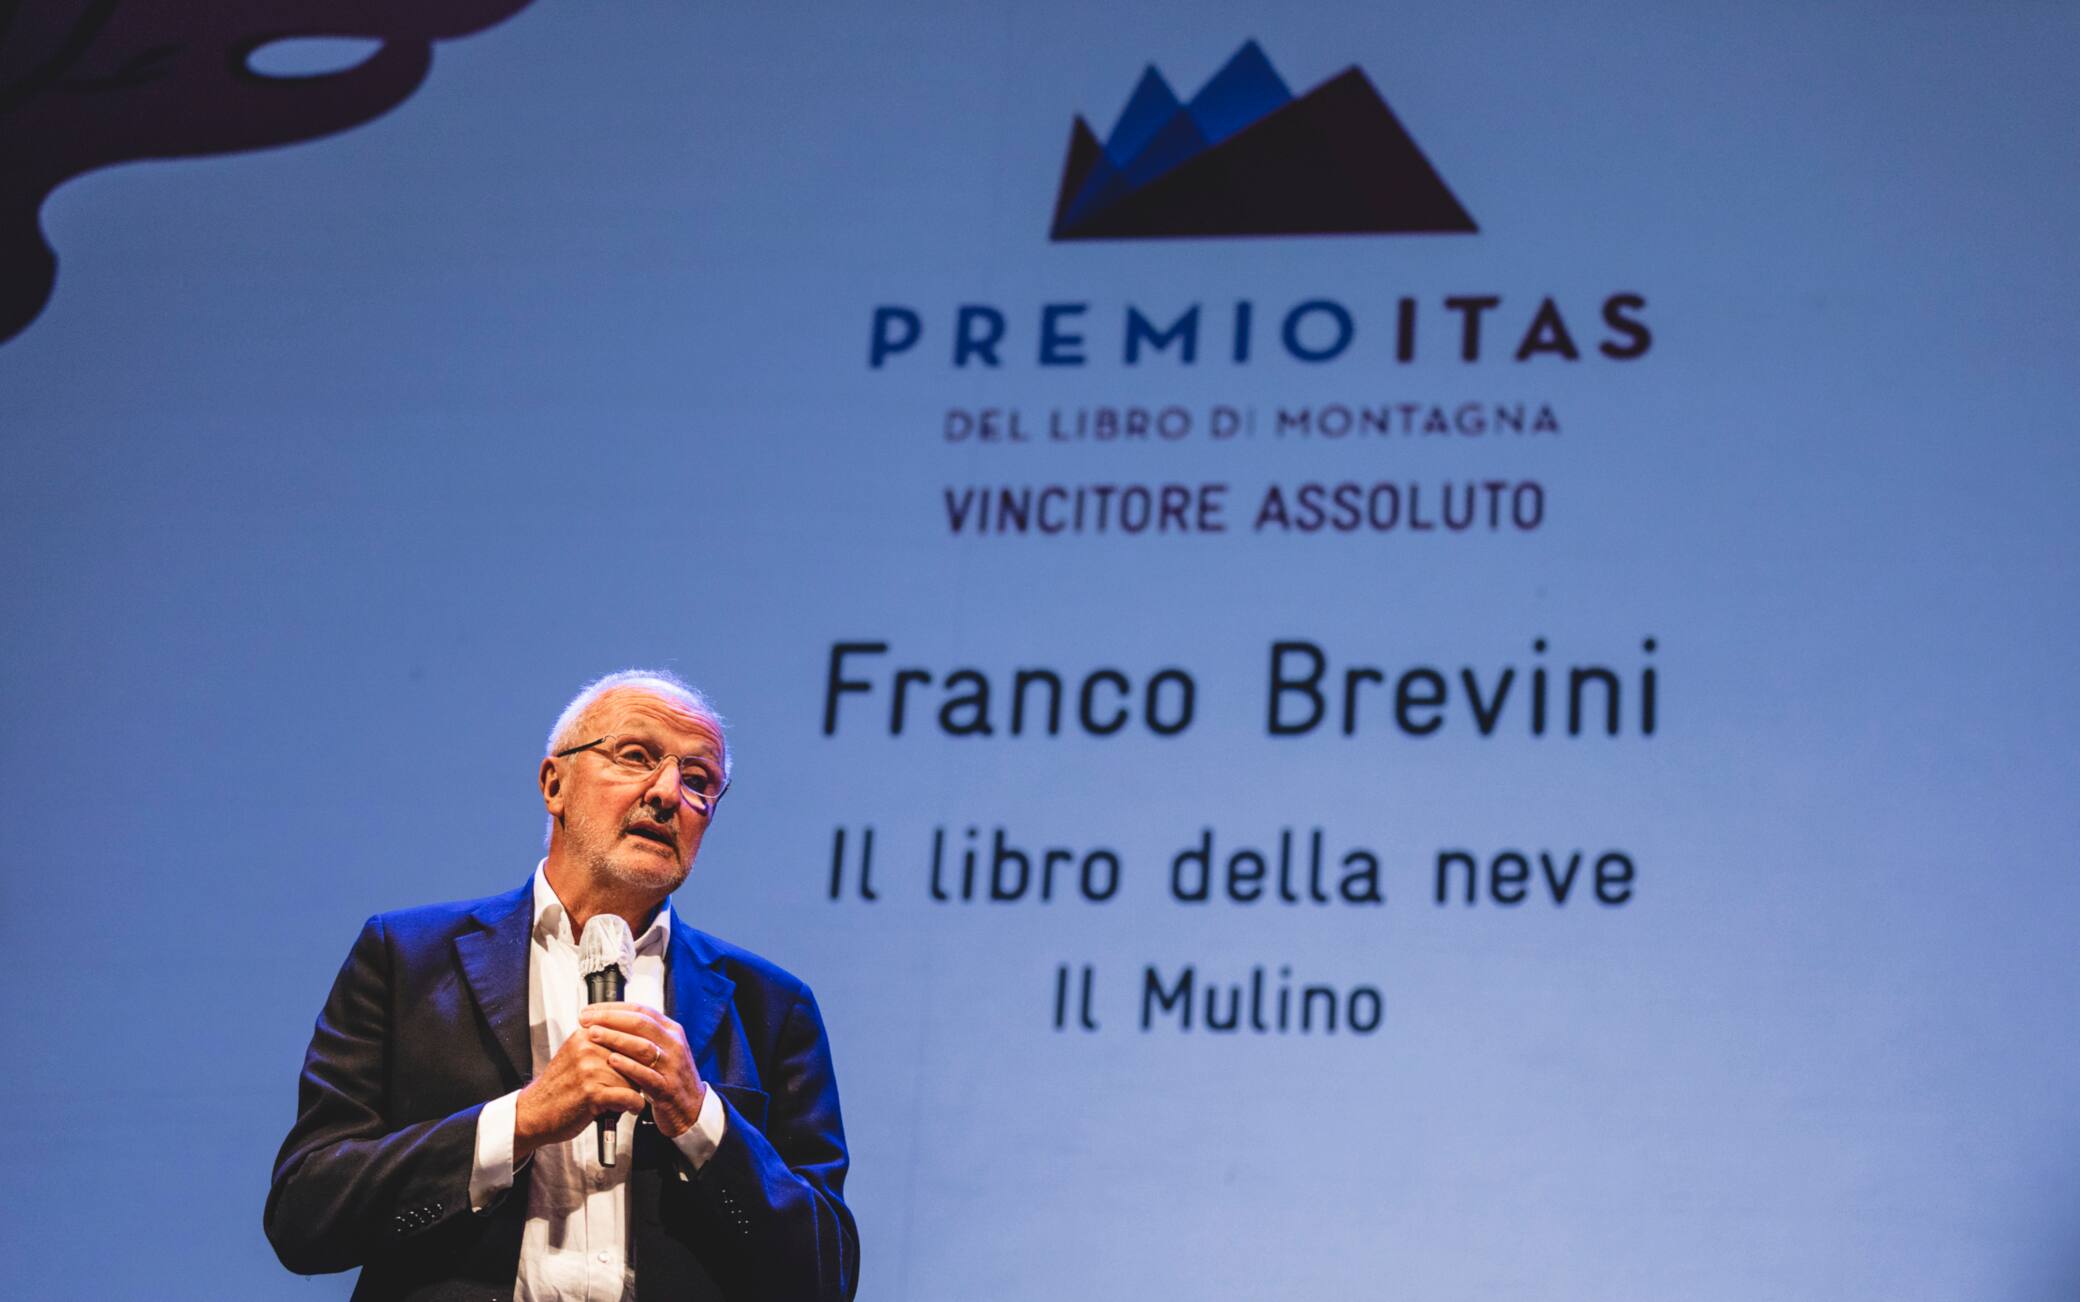 Franco Brevini